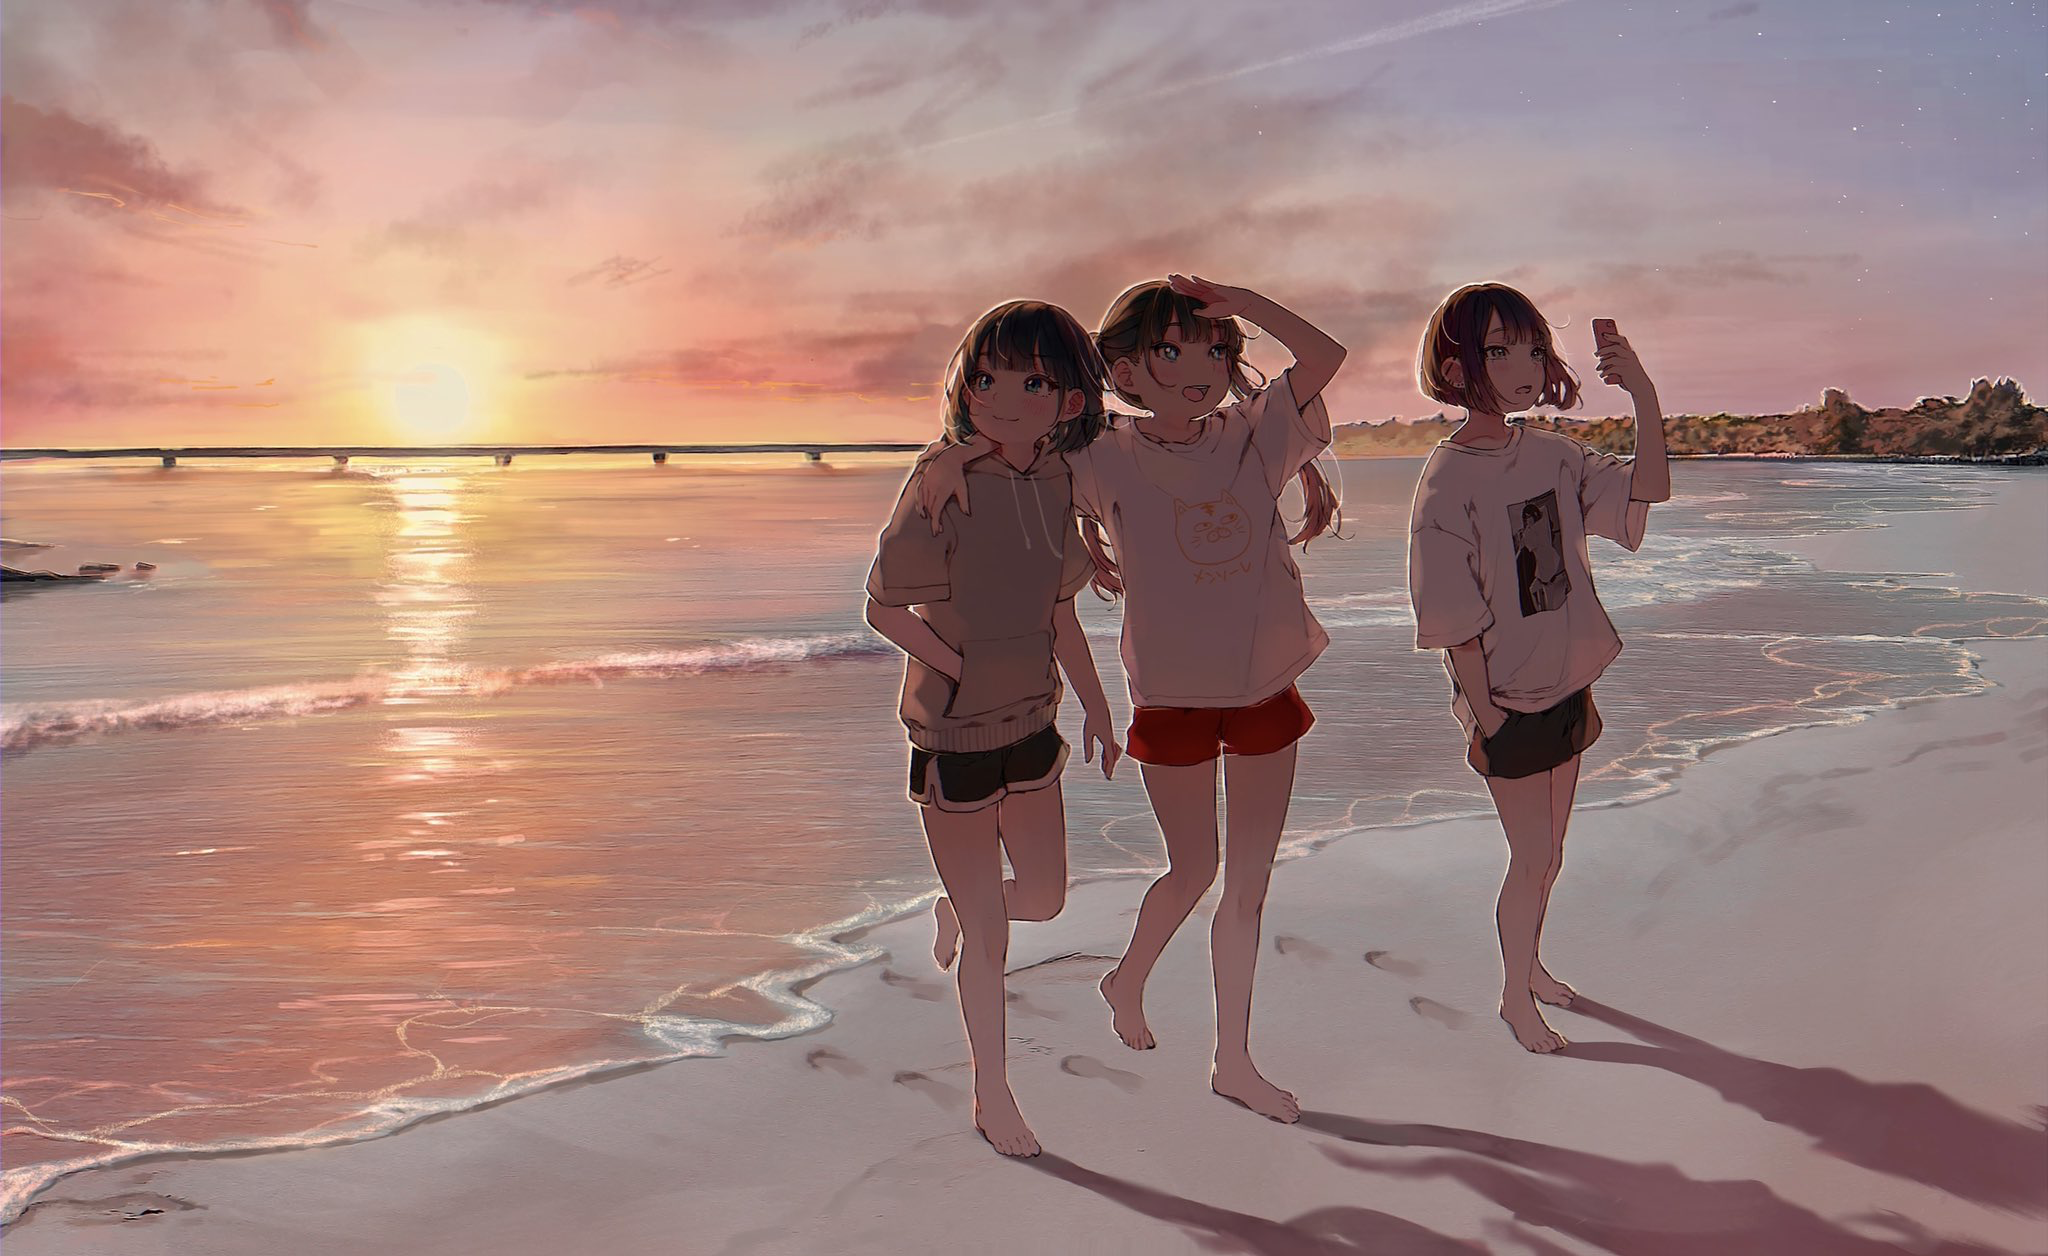 Hình nền anime cô gái bãi biển sẽ khiến bạn cảm thấy như mình đang sống trong một thế giới đầy màu sắc và năng động. Với hình ảnh cô gái xinh đẹp và biển xanh ngắt nơi đây, hình nền sẽ làm trang trí cho điện thoại của bạn thêm phần sinh động.